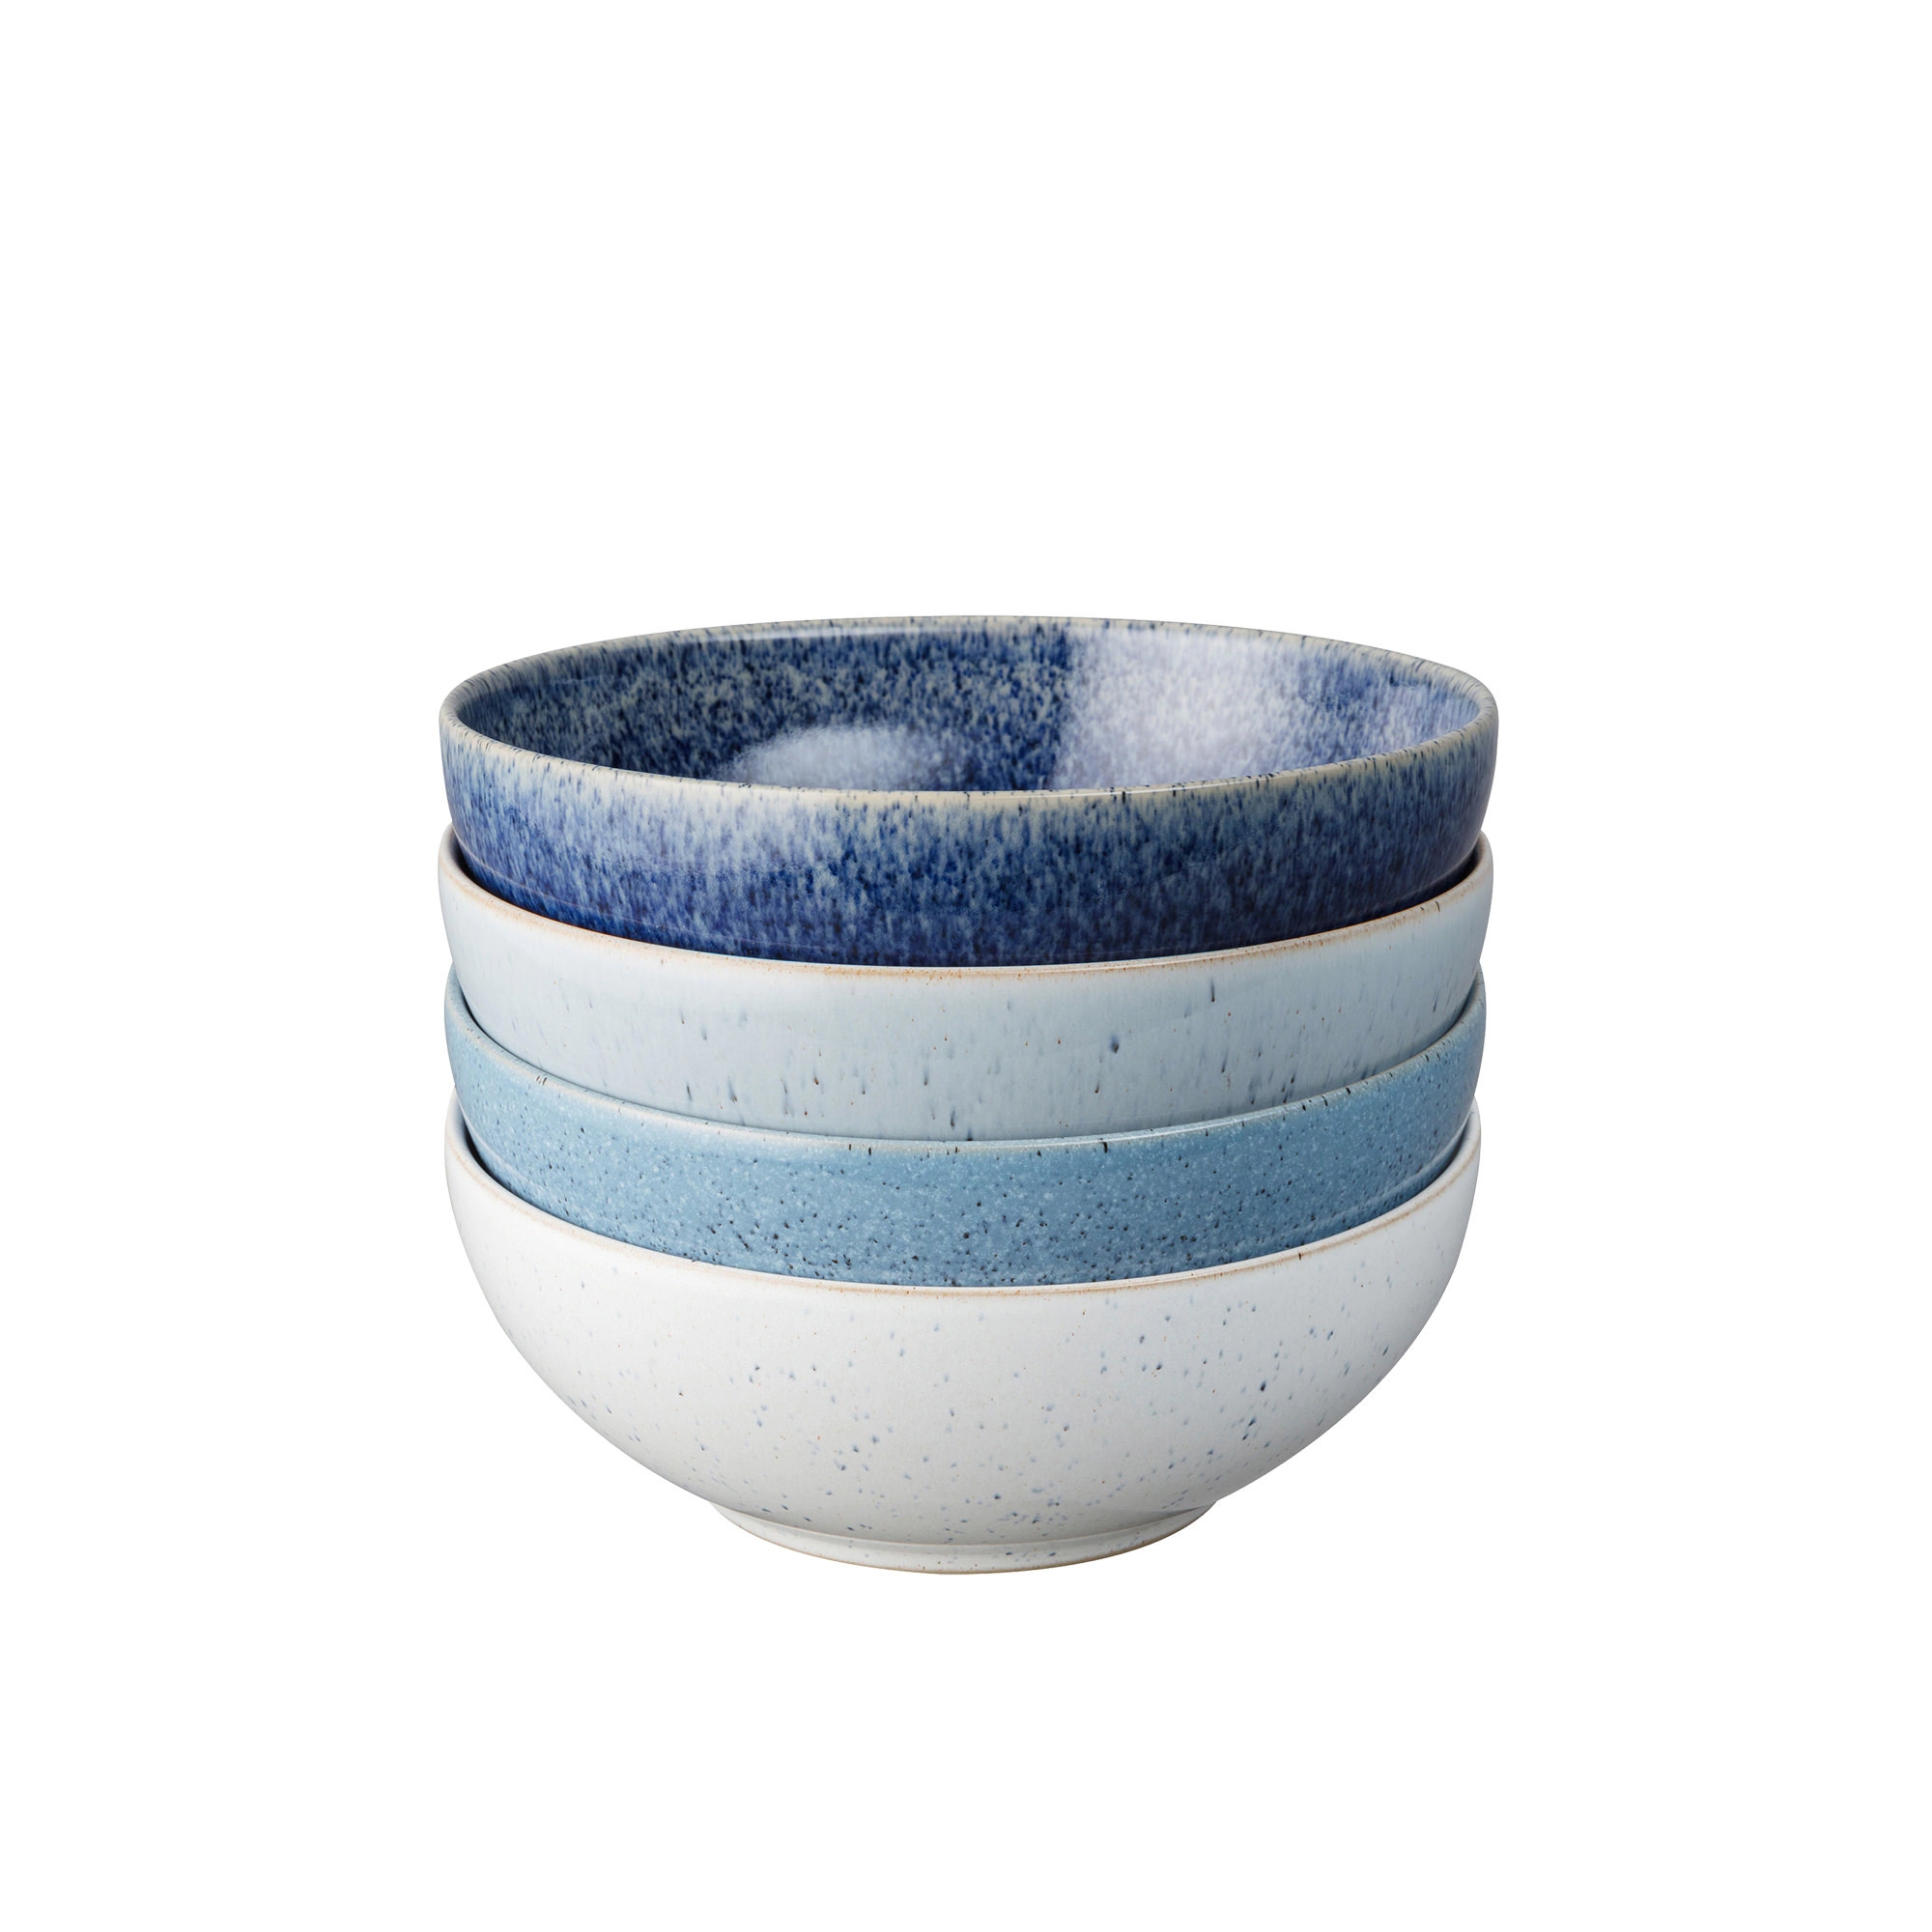 Denby Studio Blue Cereal Bowl Set of 4 Image 1